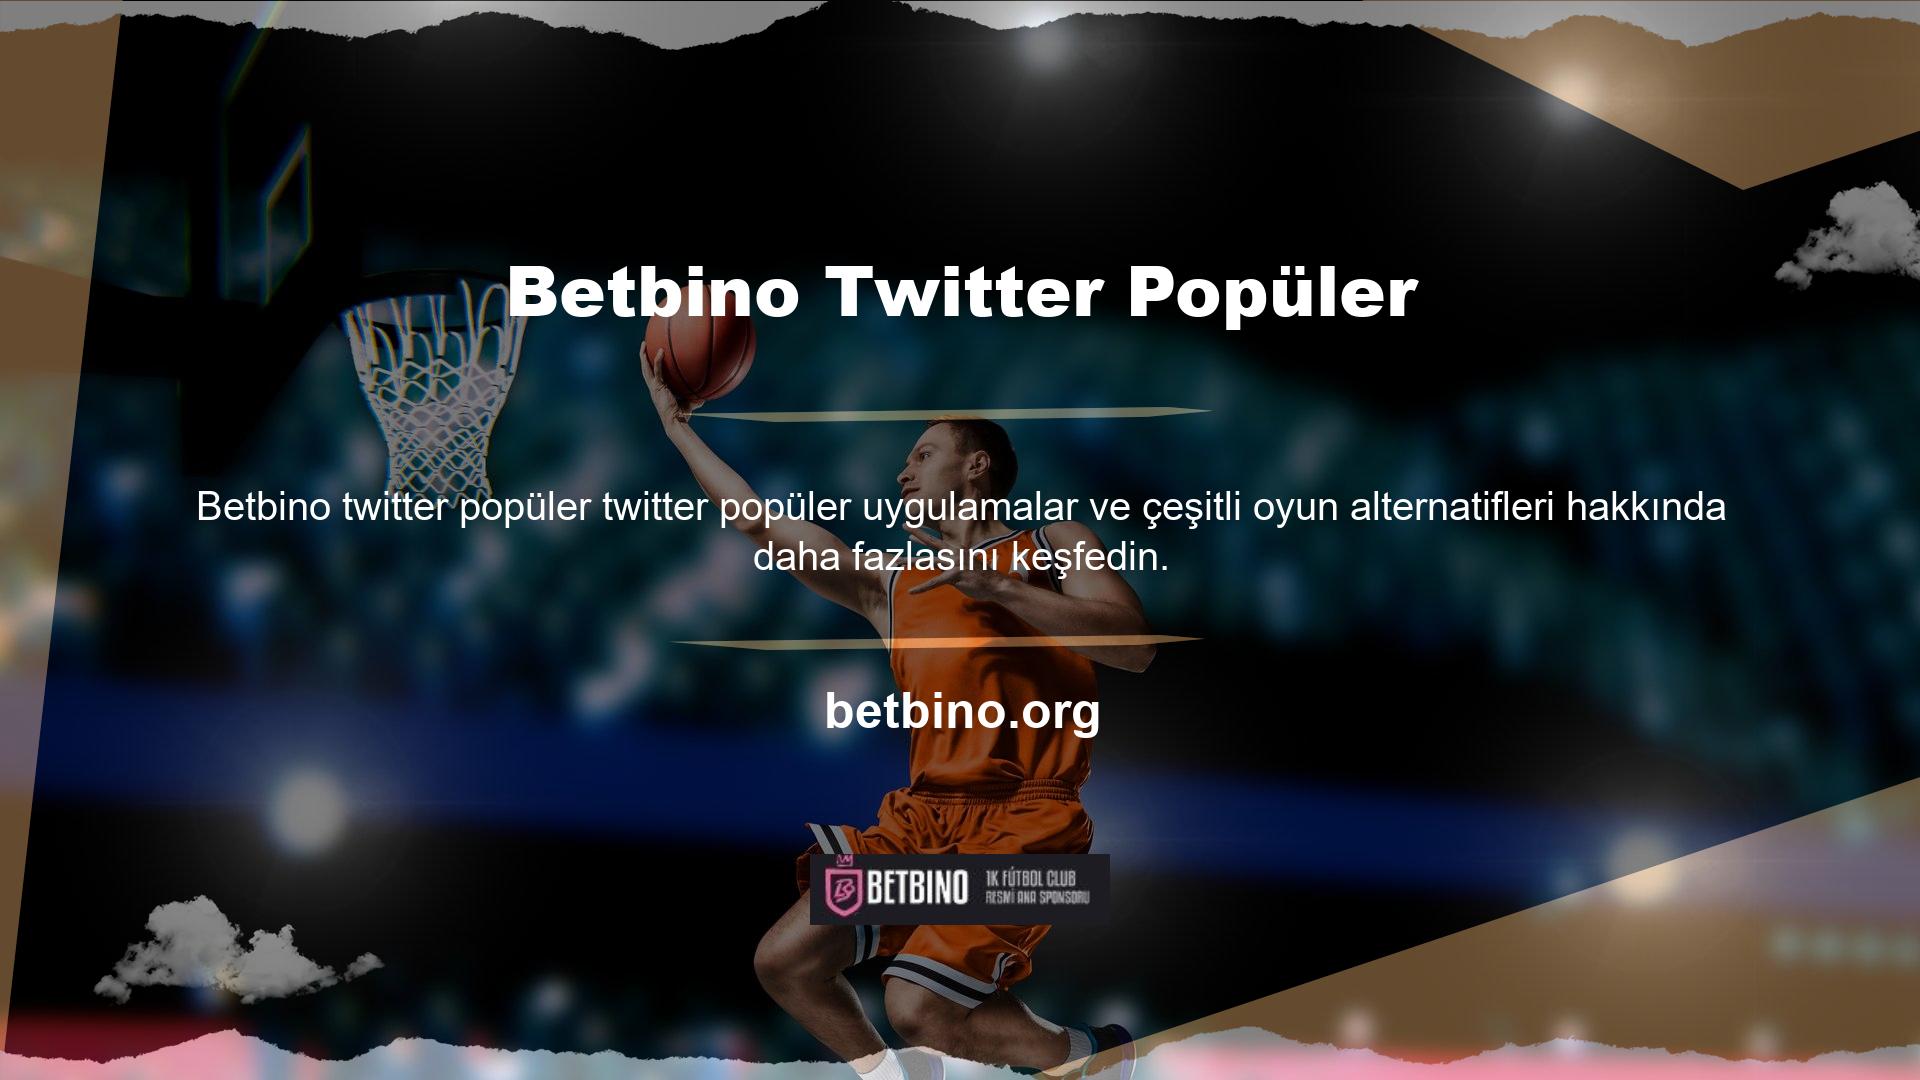 Betbino Twitter etkili bir şekilde kullanmak, önemli etkinliklere ve uygulamalara katılmanıza olanak tanır